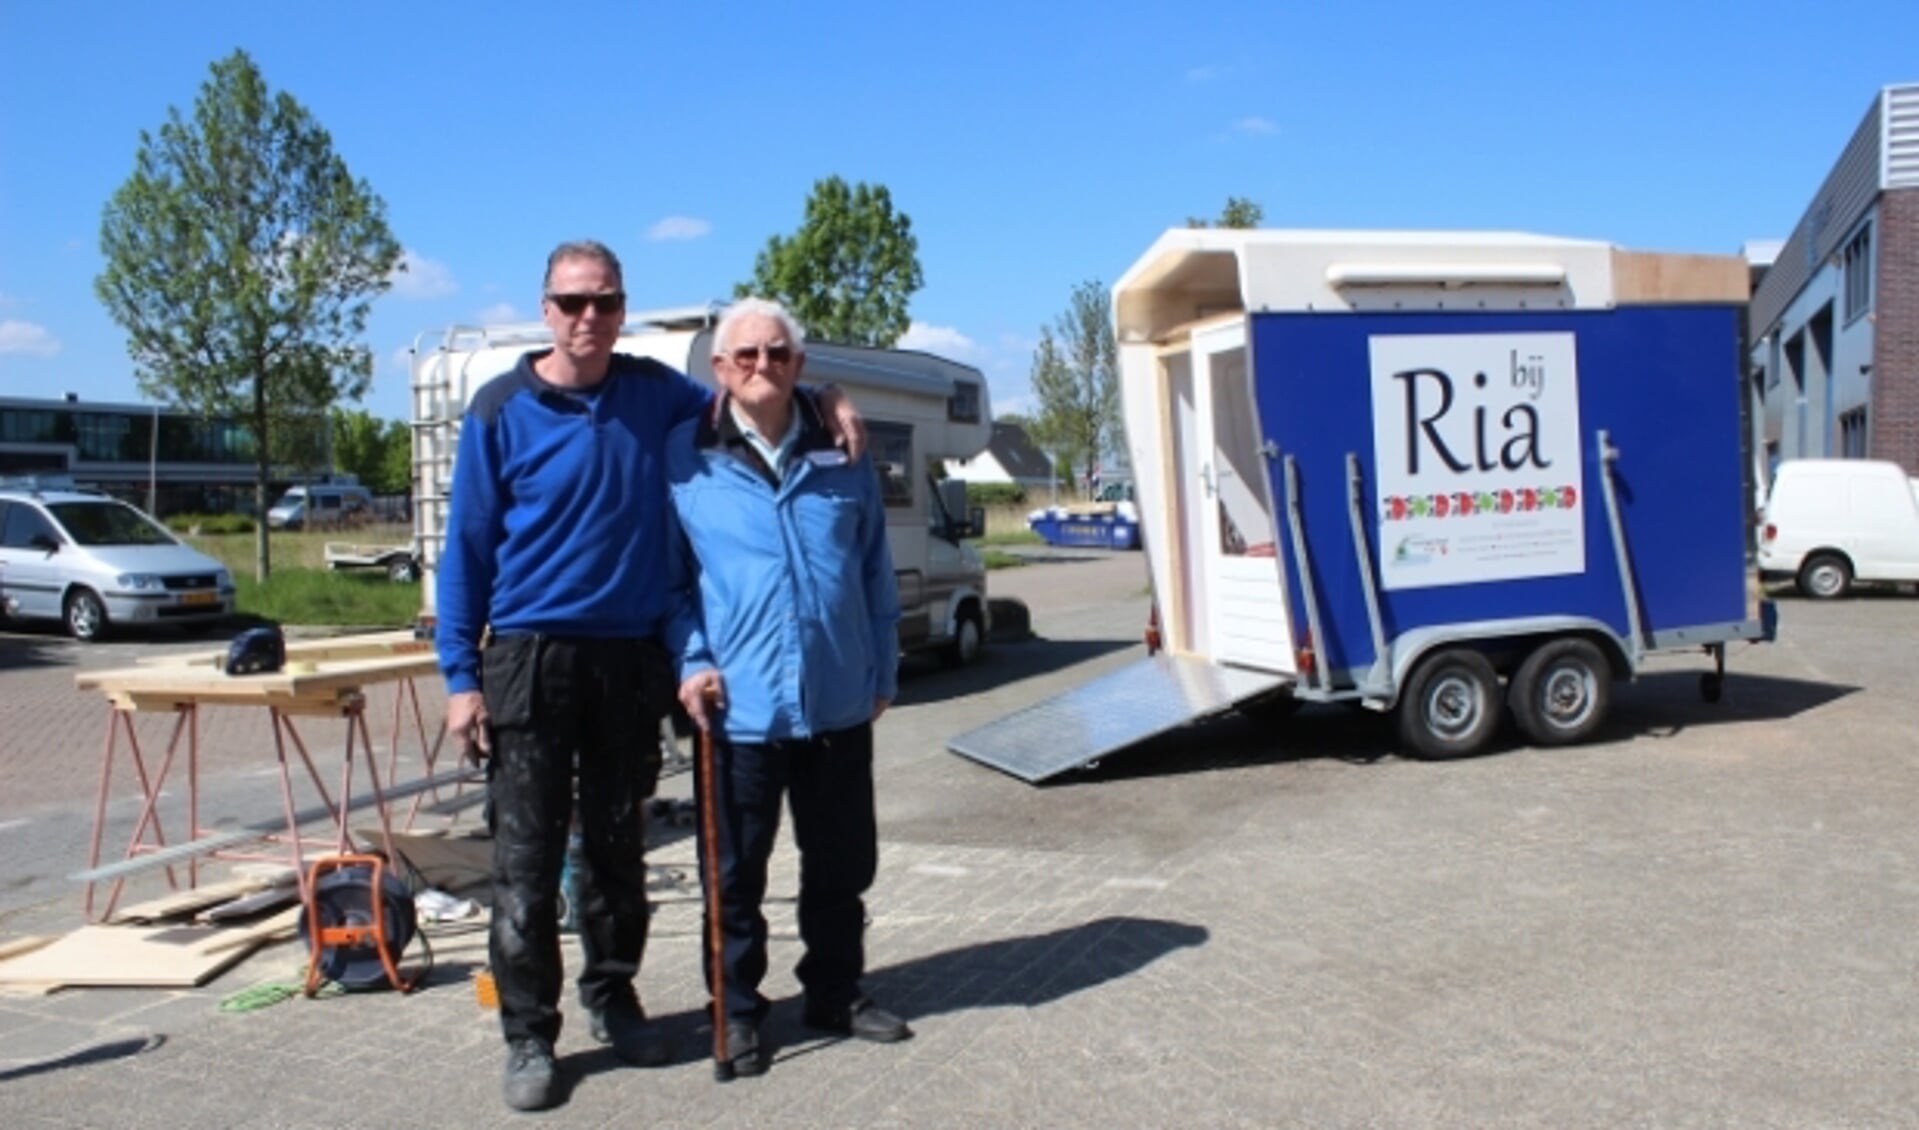 Aannemer René de Jong met zijn vader Jan de Jong, die onlangs zijn vrouw Ria verloor. Op de achtergrond de mobiele ontmoetingsruimte. (Foto: Martijn Mastenbroek)